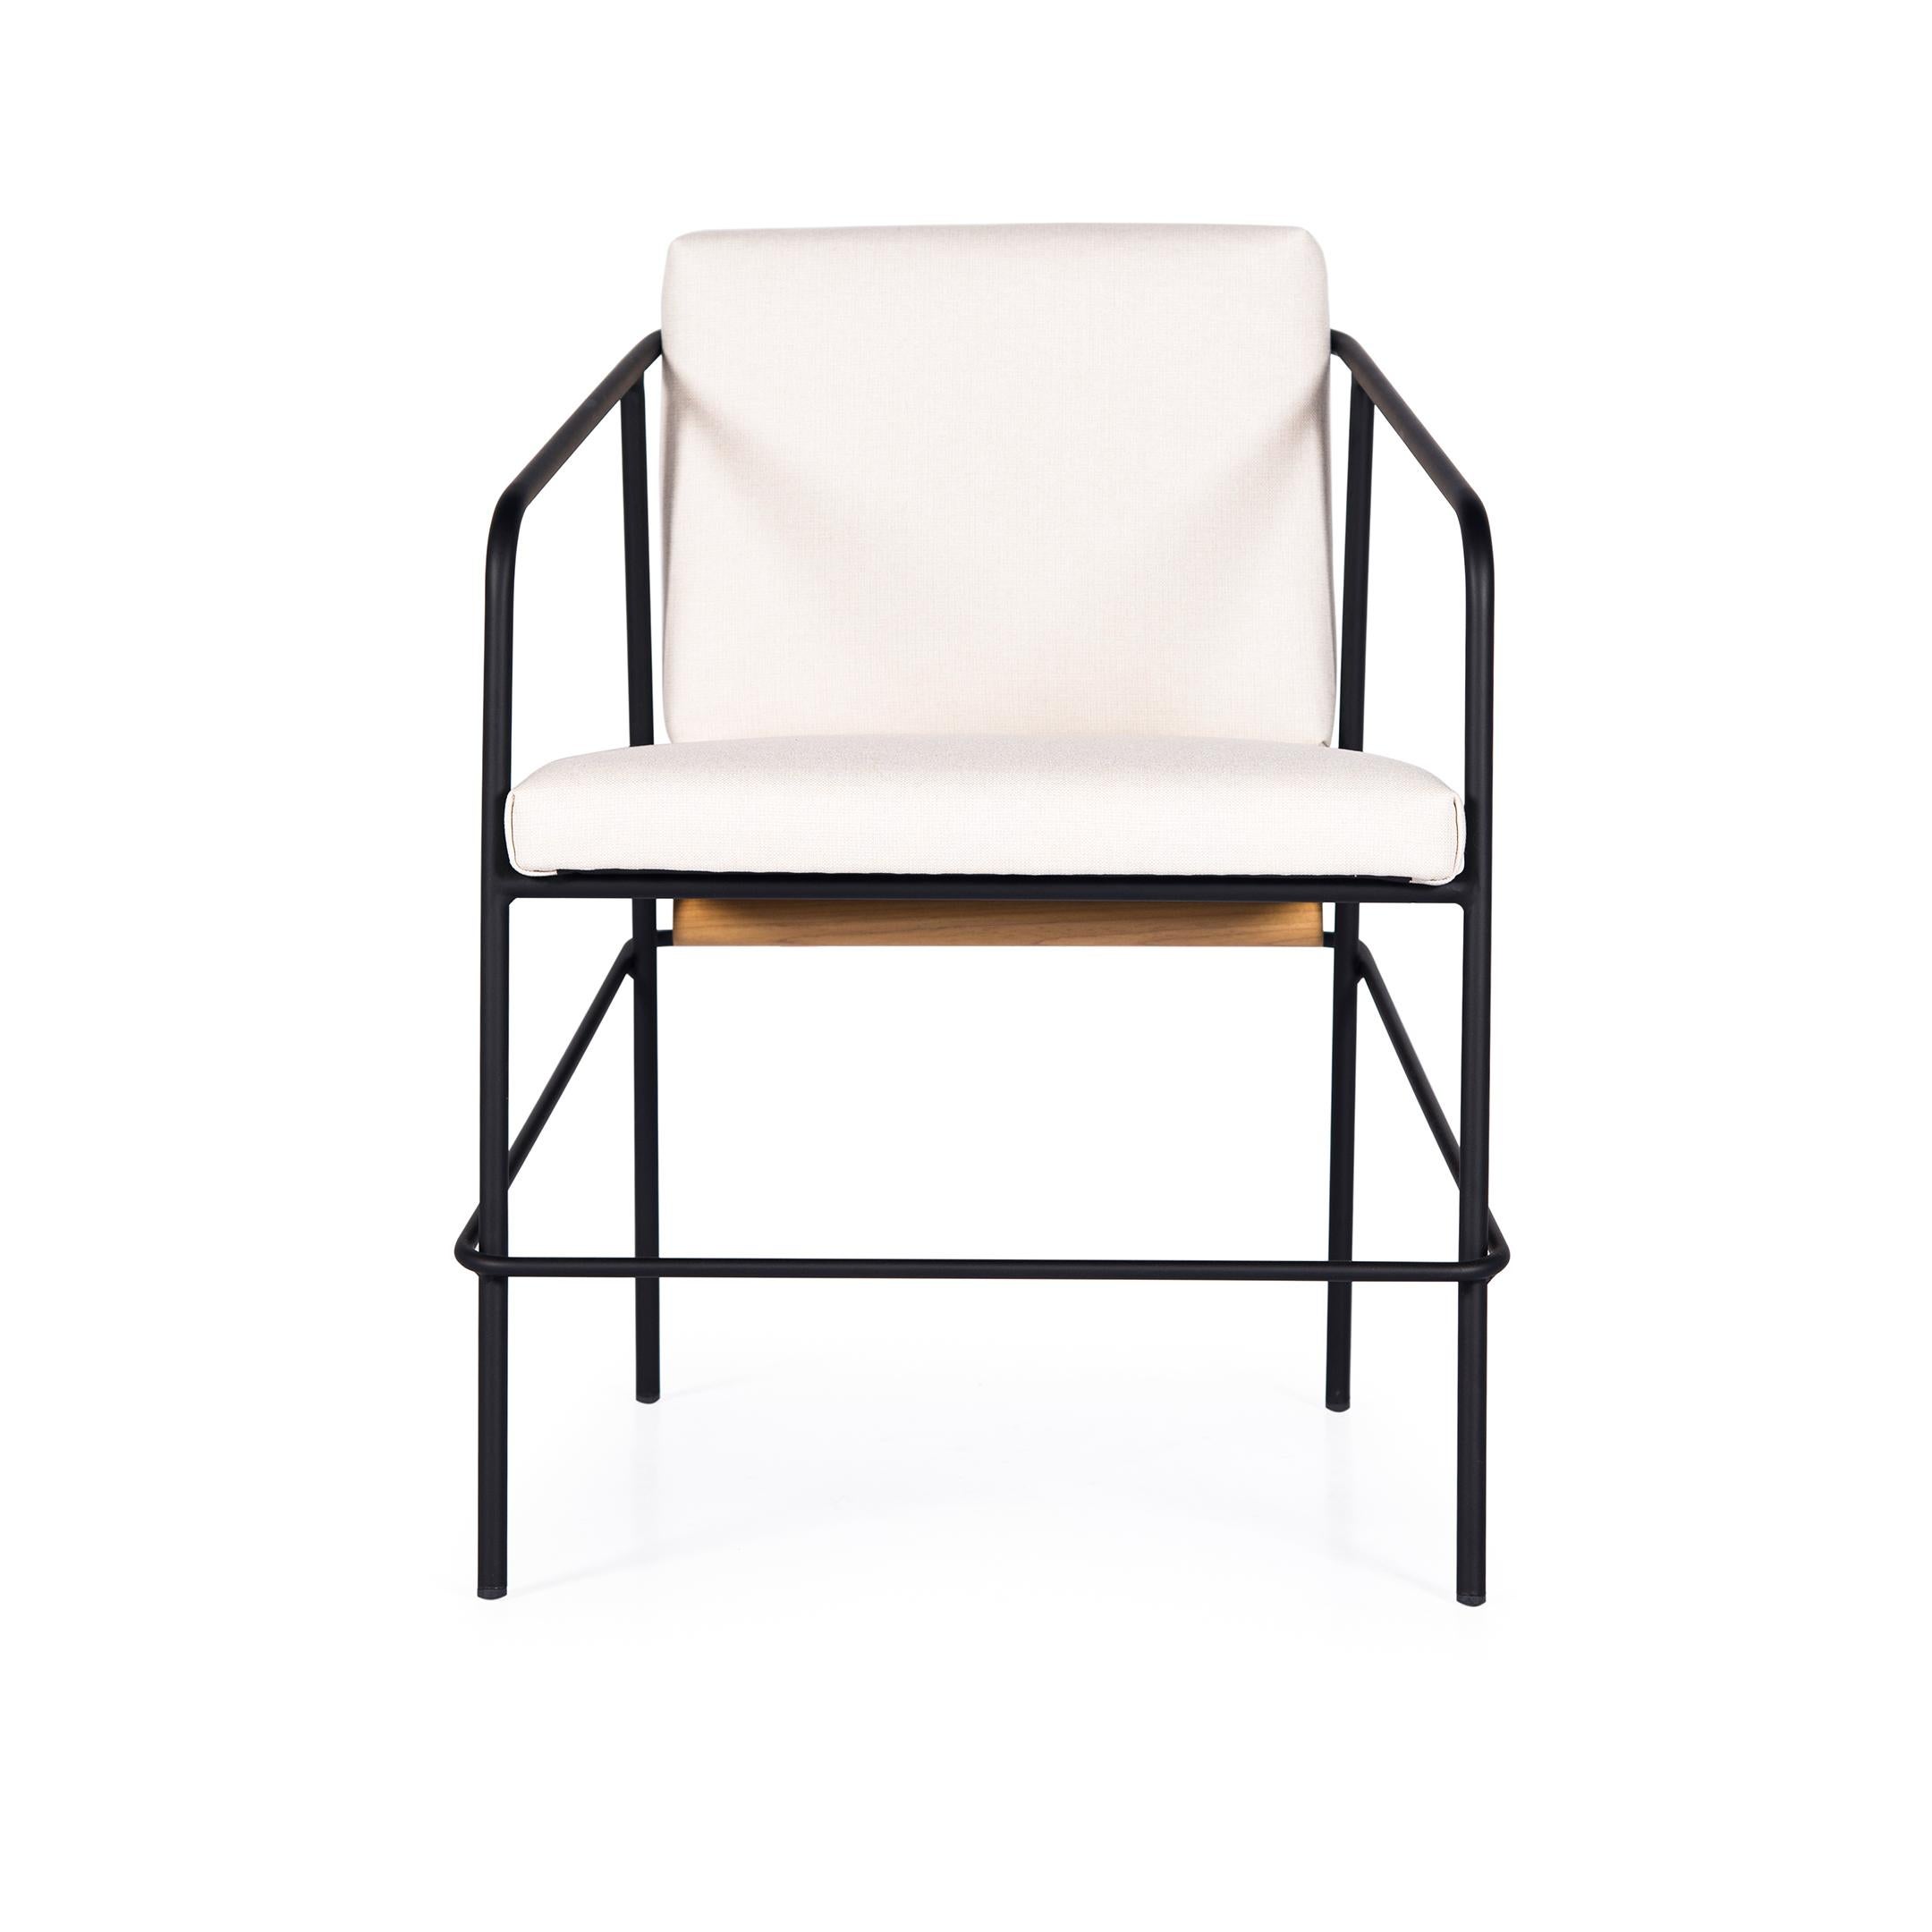 La structure de la chaise OLAV est en acier au carbone peint à l'encre noire.
Le tissu d'ameublement qui peut être personnalisé (demander des informations).
Il est doté d'un dossier en cuir en finition Afro et d'un cylindre en bois naturel qui